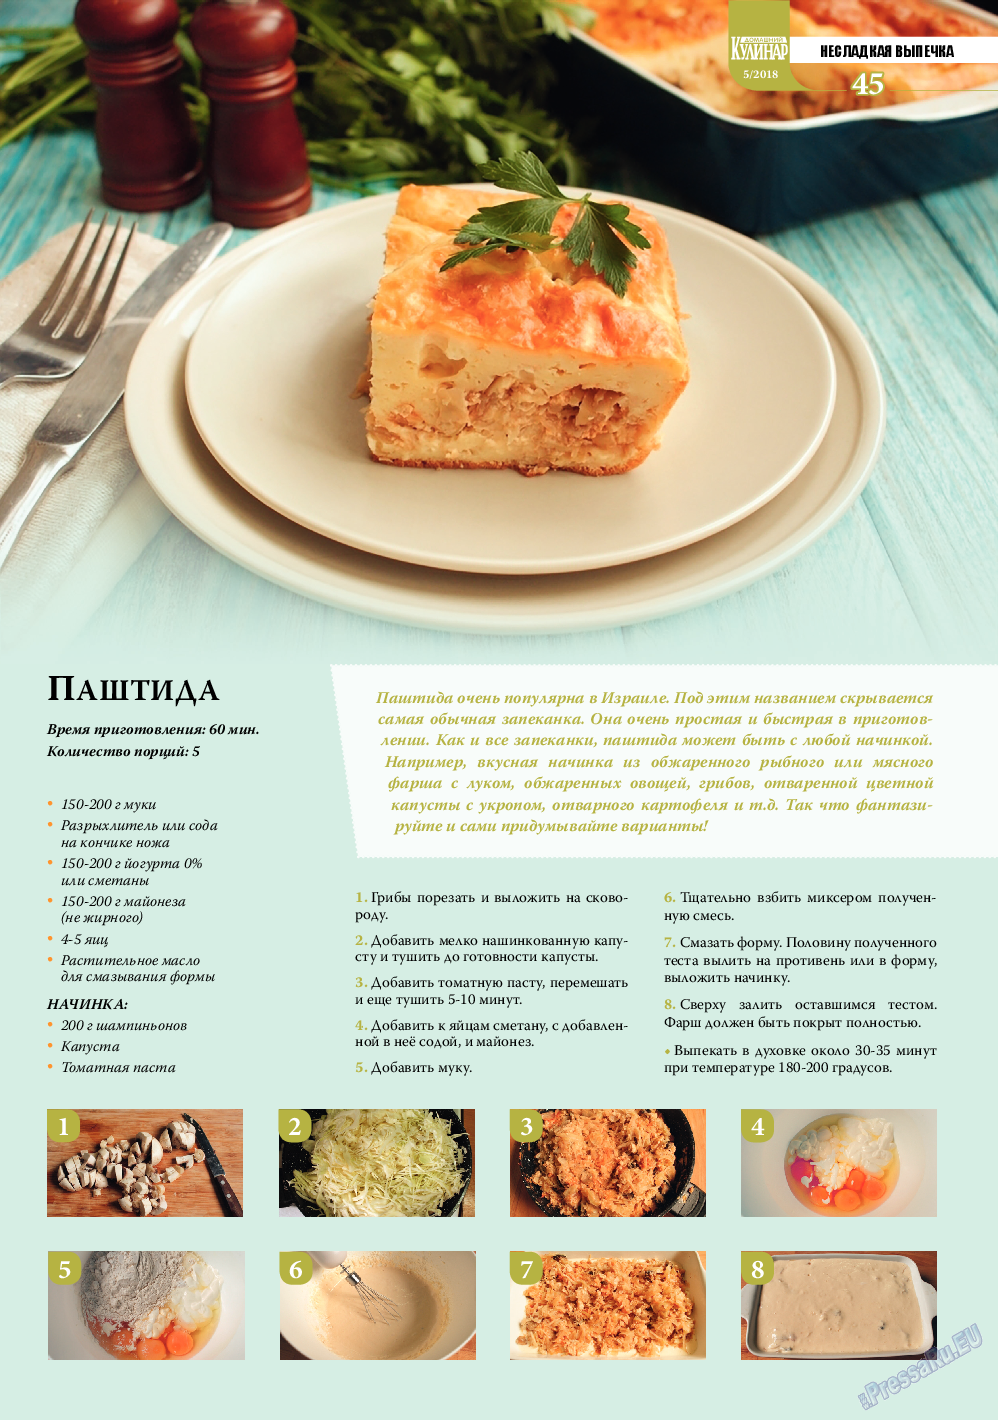 Домашний кулинар, журнал. 2018 №5 стр.45